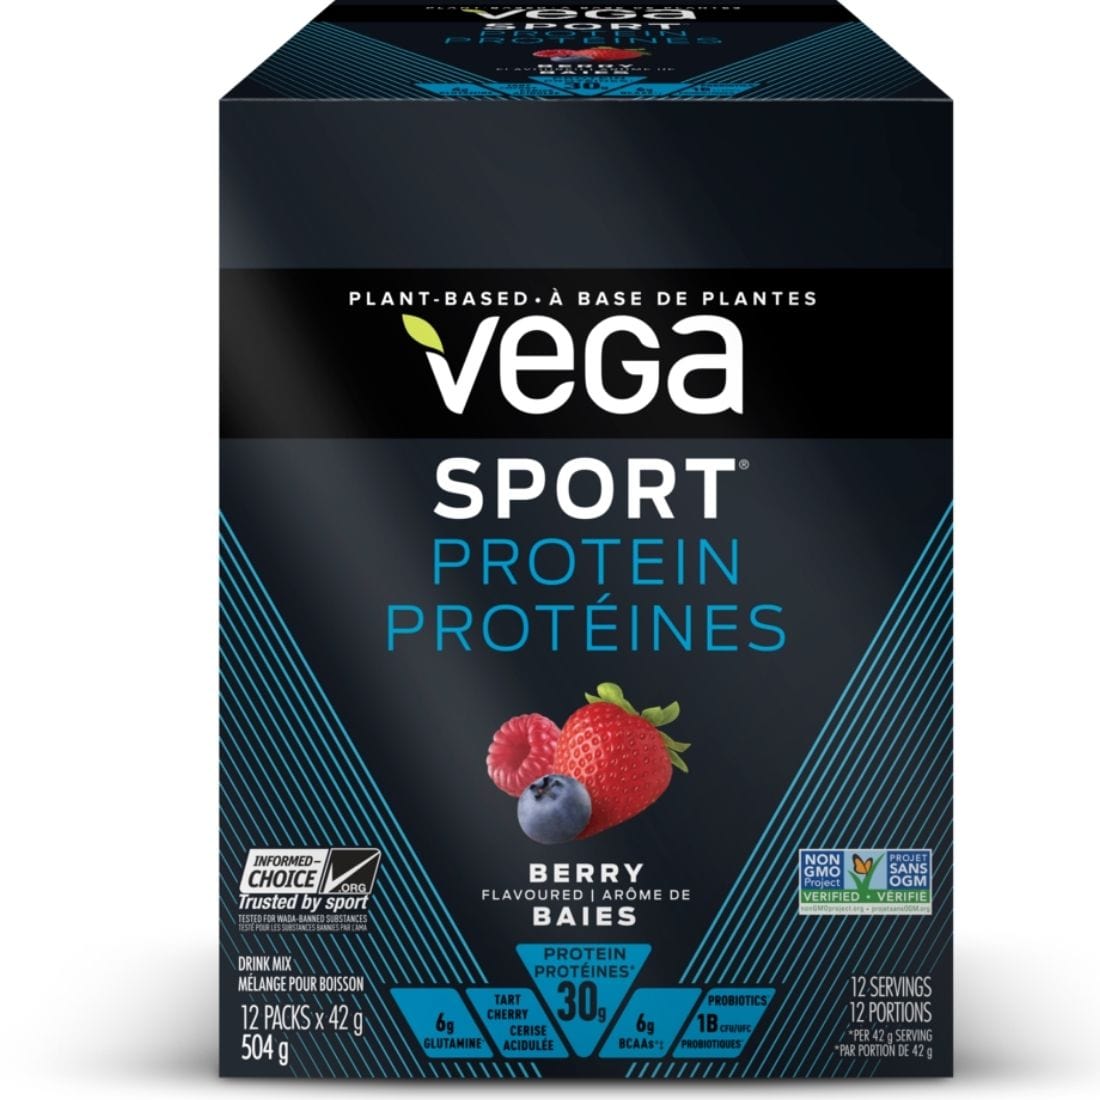 Vega Sport Protein, Plant-Based Performance Protein with 30g Protein, 5g BCAA, 5g Glutamine, 1 Billion Probiotics